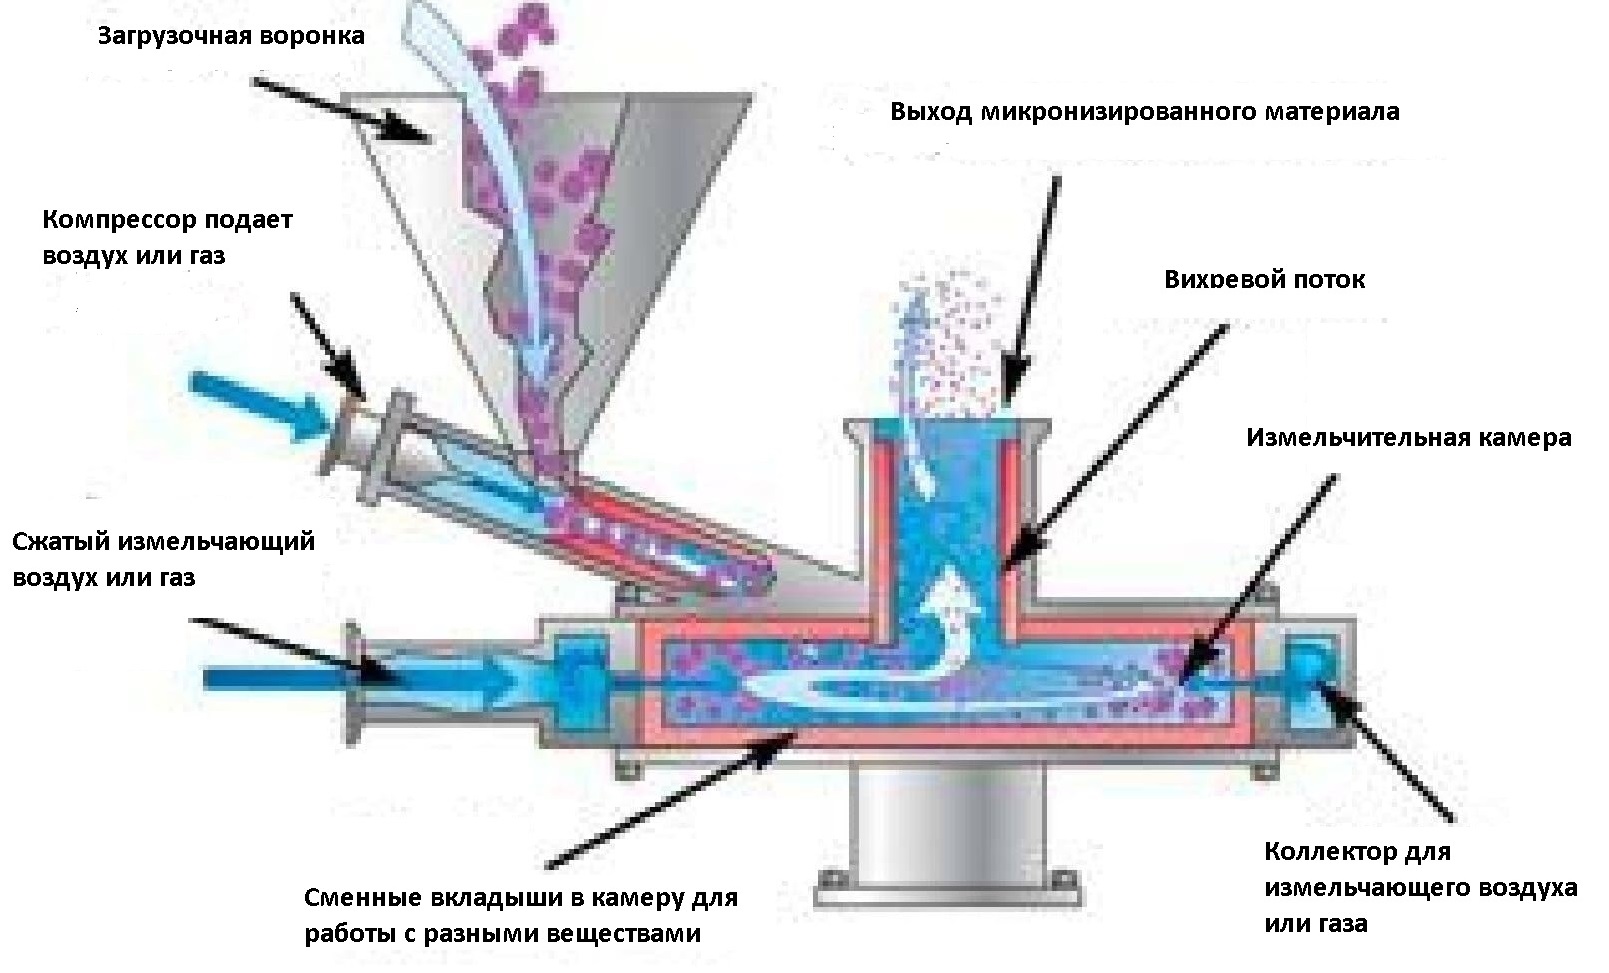 Принцип работы струйных мельниц Tecnologia meccanica основан на технологии струйного измельчения